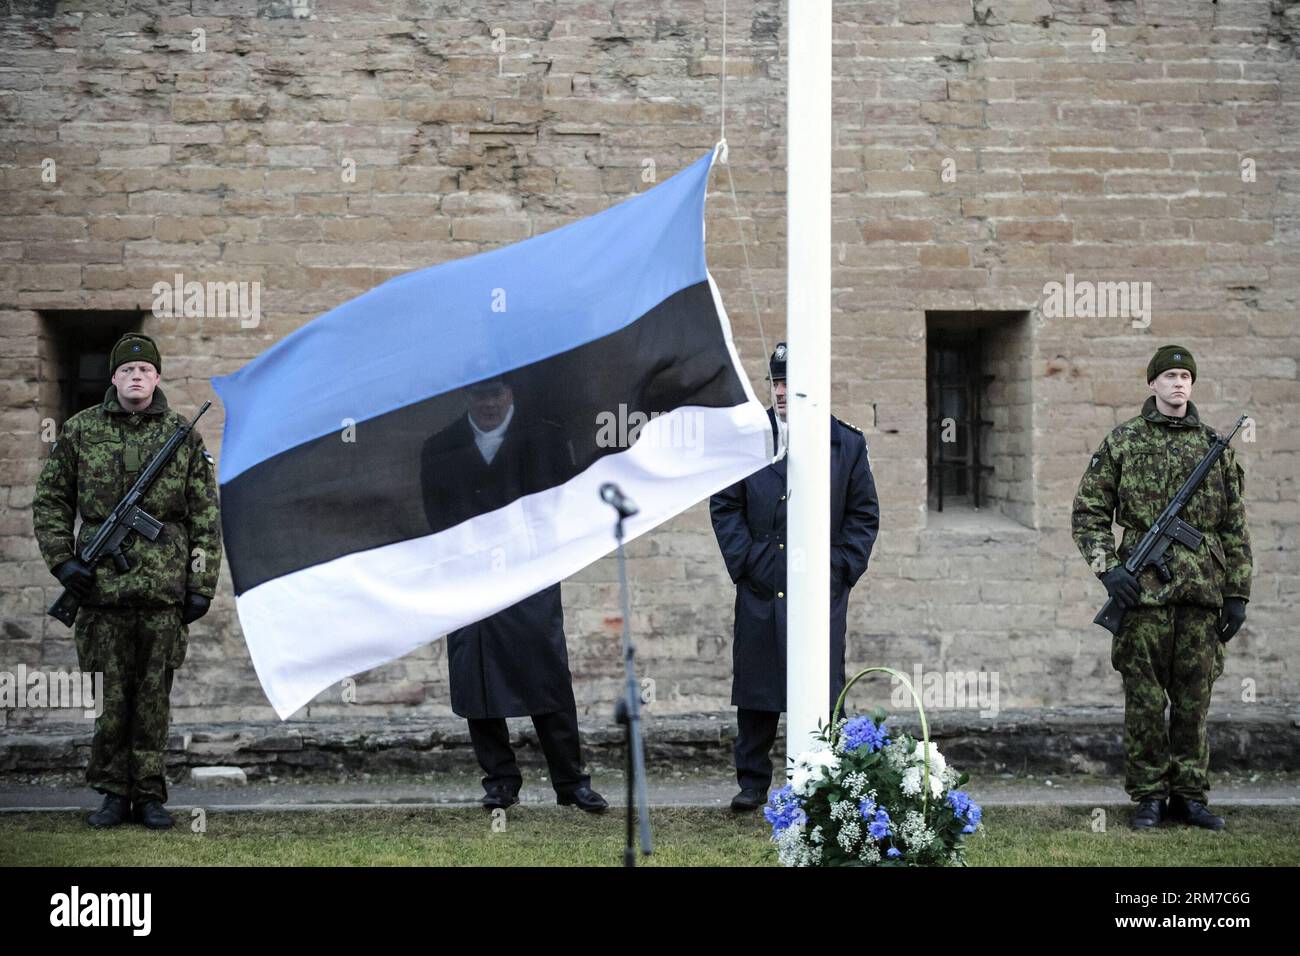 (140224) -- NARVA(ESTONIE), 24 février 2014 (Xinhua) -- une photo prise le 24 février 2014 montre la cérémonie du lever du soleil à Narva, la ville la plus orientale de l'Estonie. Estonie célébrant son 96e anniversaire de l'indépendance lundi, et la première cérémonie du drapeau du lever du soleil dans le pays a eu lieu dans la ville de Narva. (Xinhua/Sergei Stepanov) ESTONIE-NARVA-ANNIVERSAIRE DE L'INDÉPENDANCE PUBLICATIONxNOTxINxCHN Narva Estonie février 24 2014 XINHUA photo prise LE 24 2014 février montre la cérémonie du drapeau du lever du soleil à Narva la ville la plus orientale de l'Estonie Estonie célébrant SON 96e anniversaire de l'indépendance LE lundi et les Firs Banque D'Images